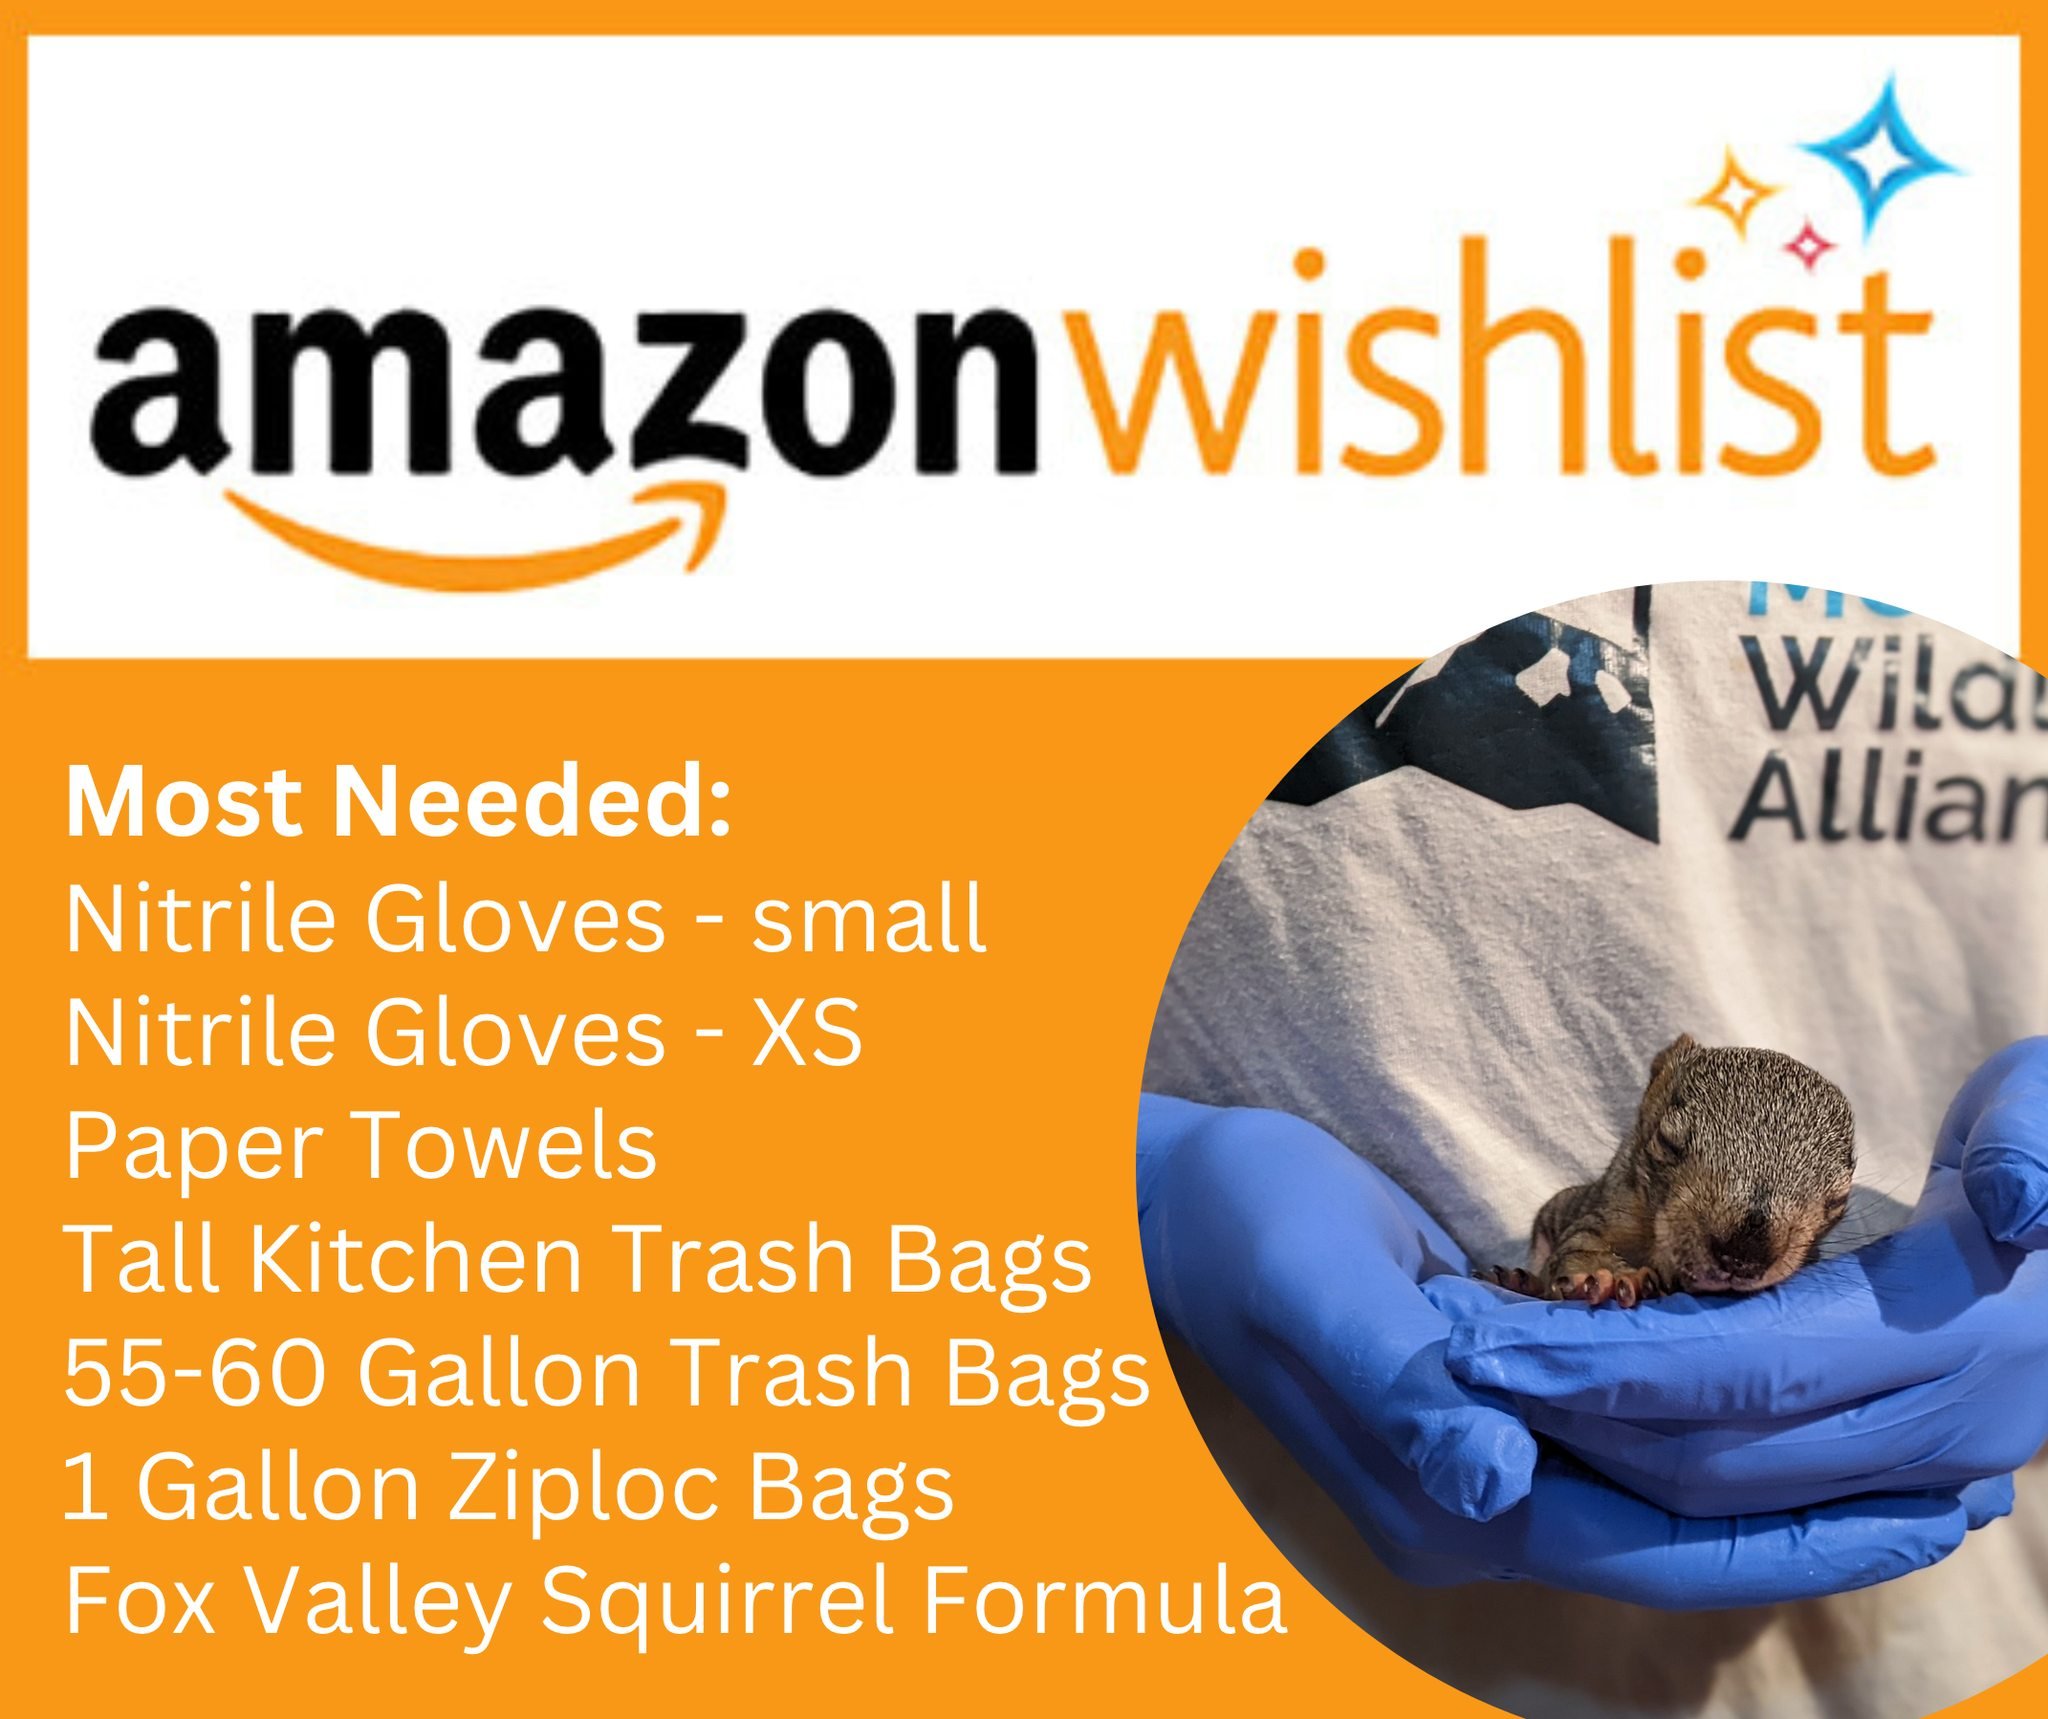 Amazon Wishlist donations